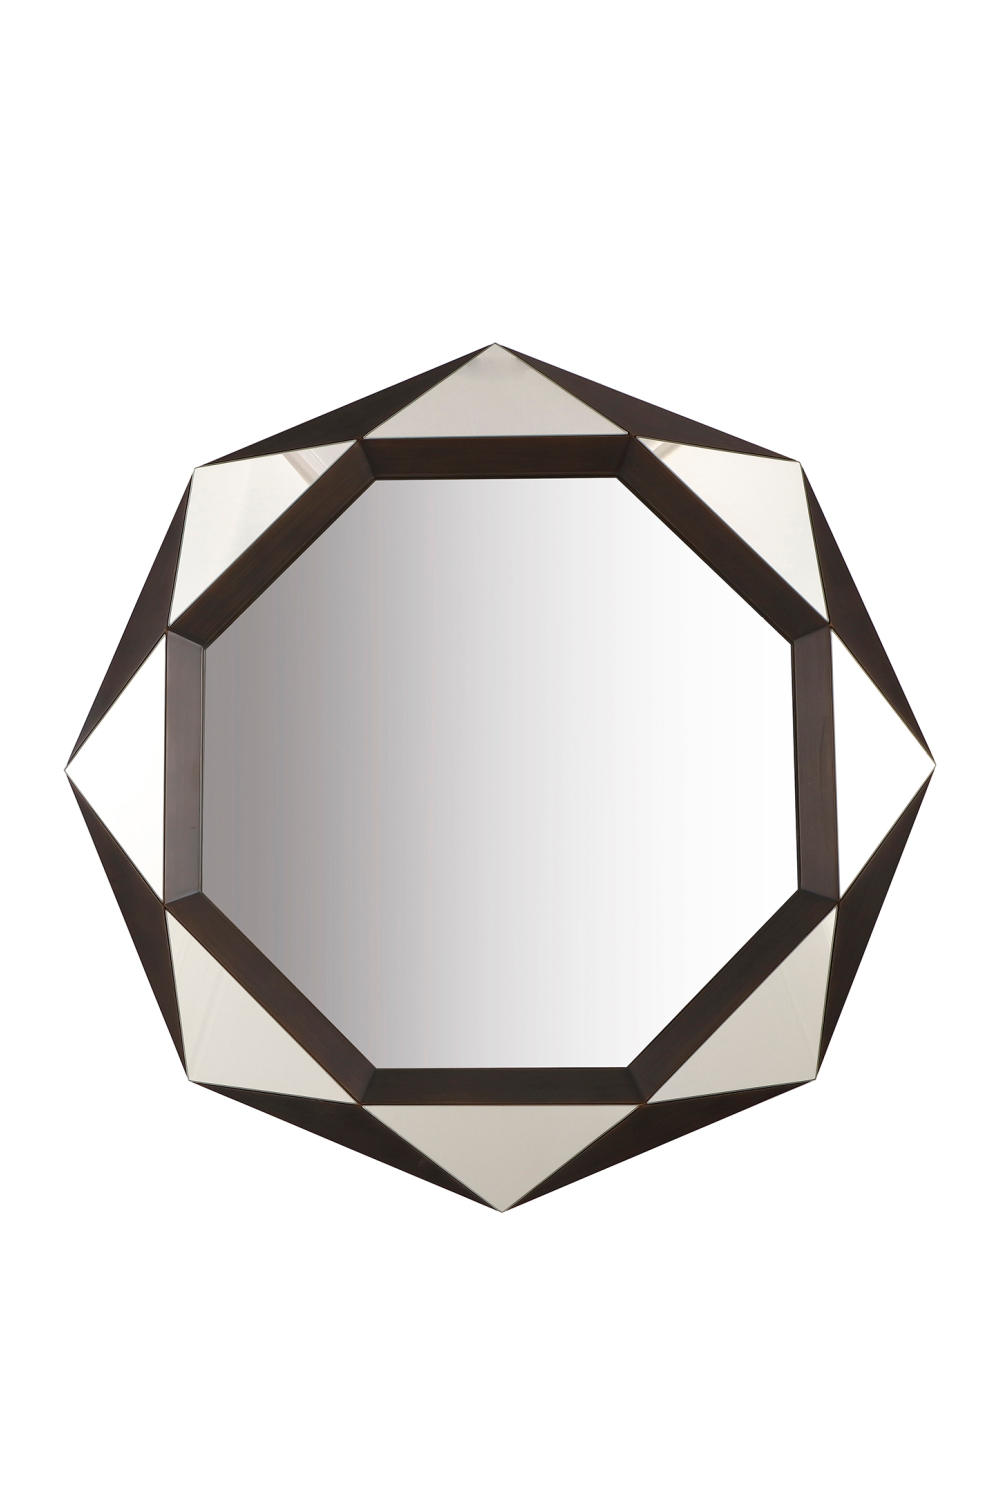 Octagonal Modern Mirror | Liang & Eimil Lieber | OROA.com